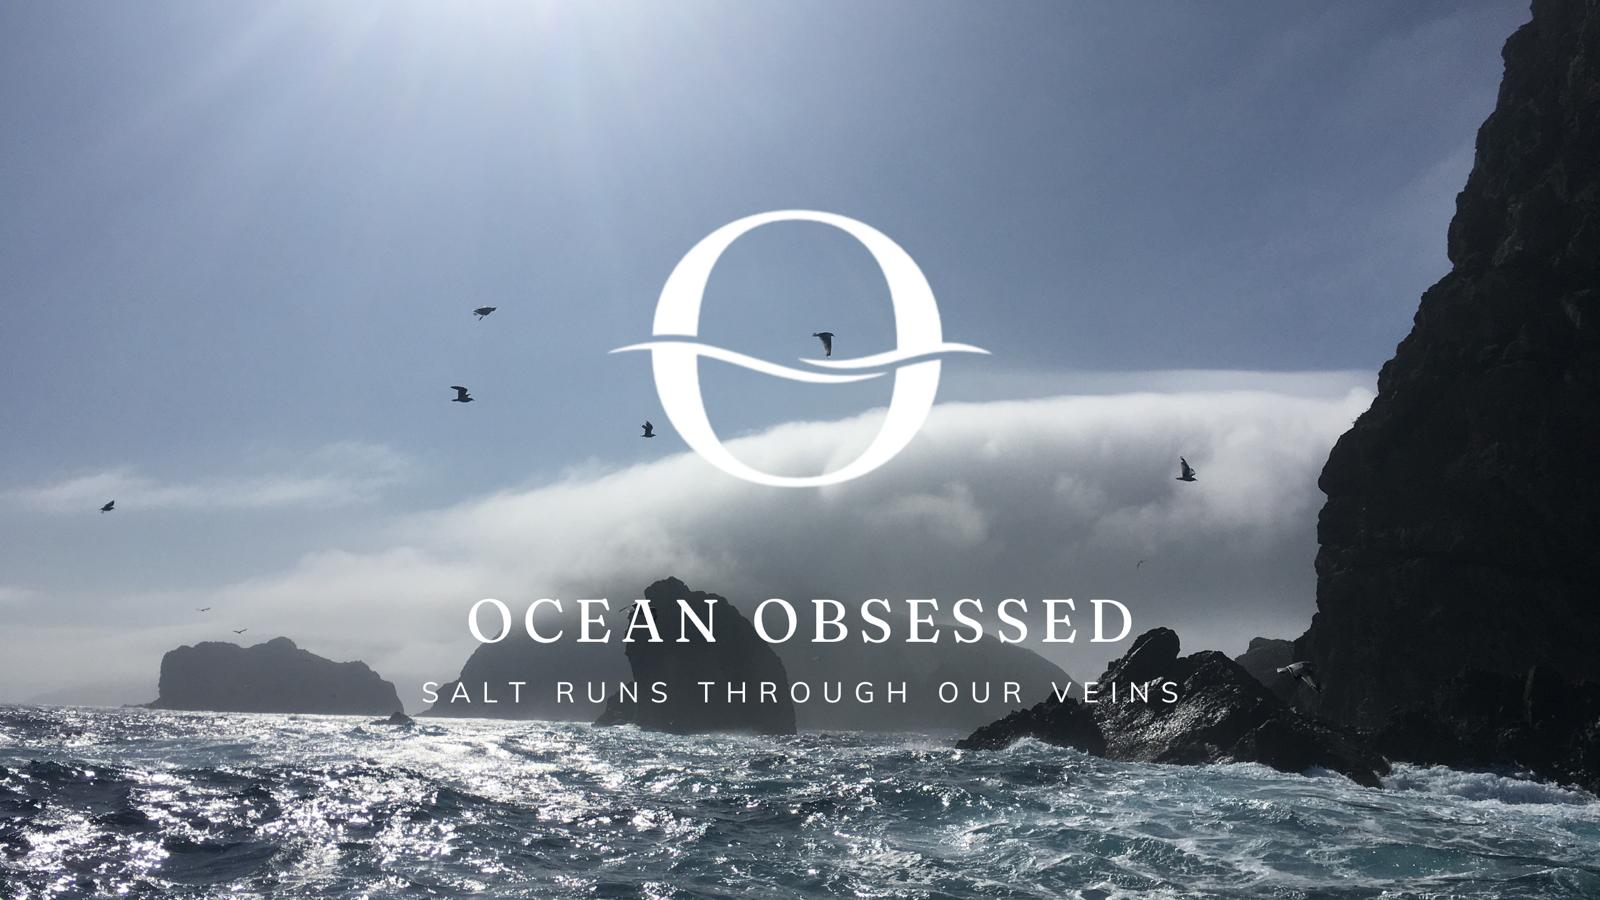 Swordie Boots by Ocean Obsessed